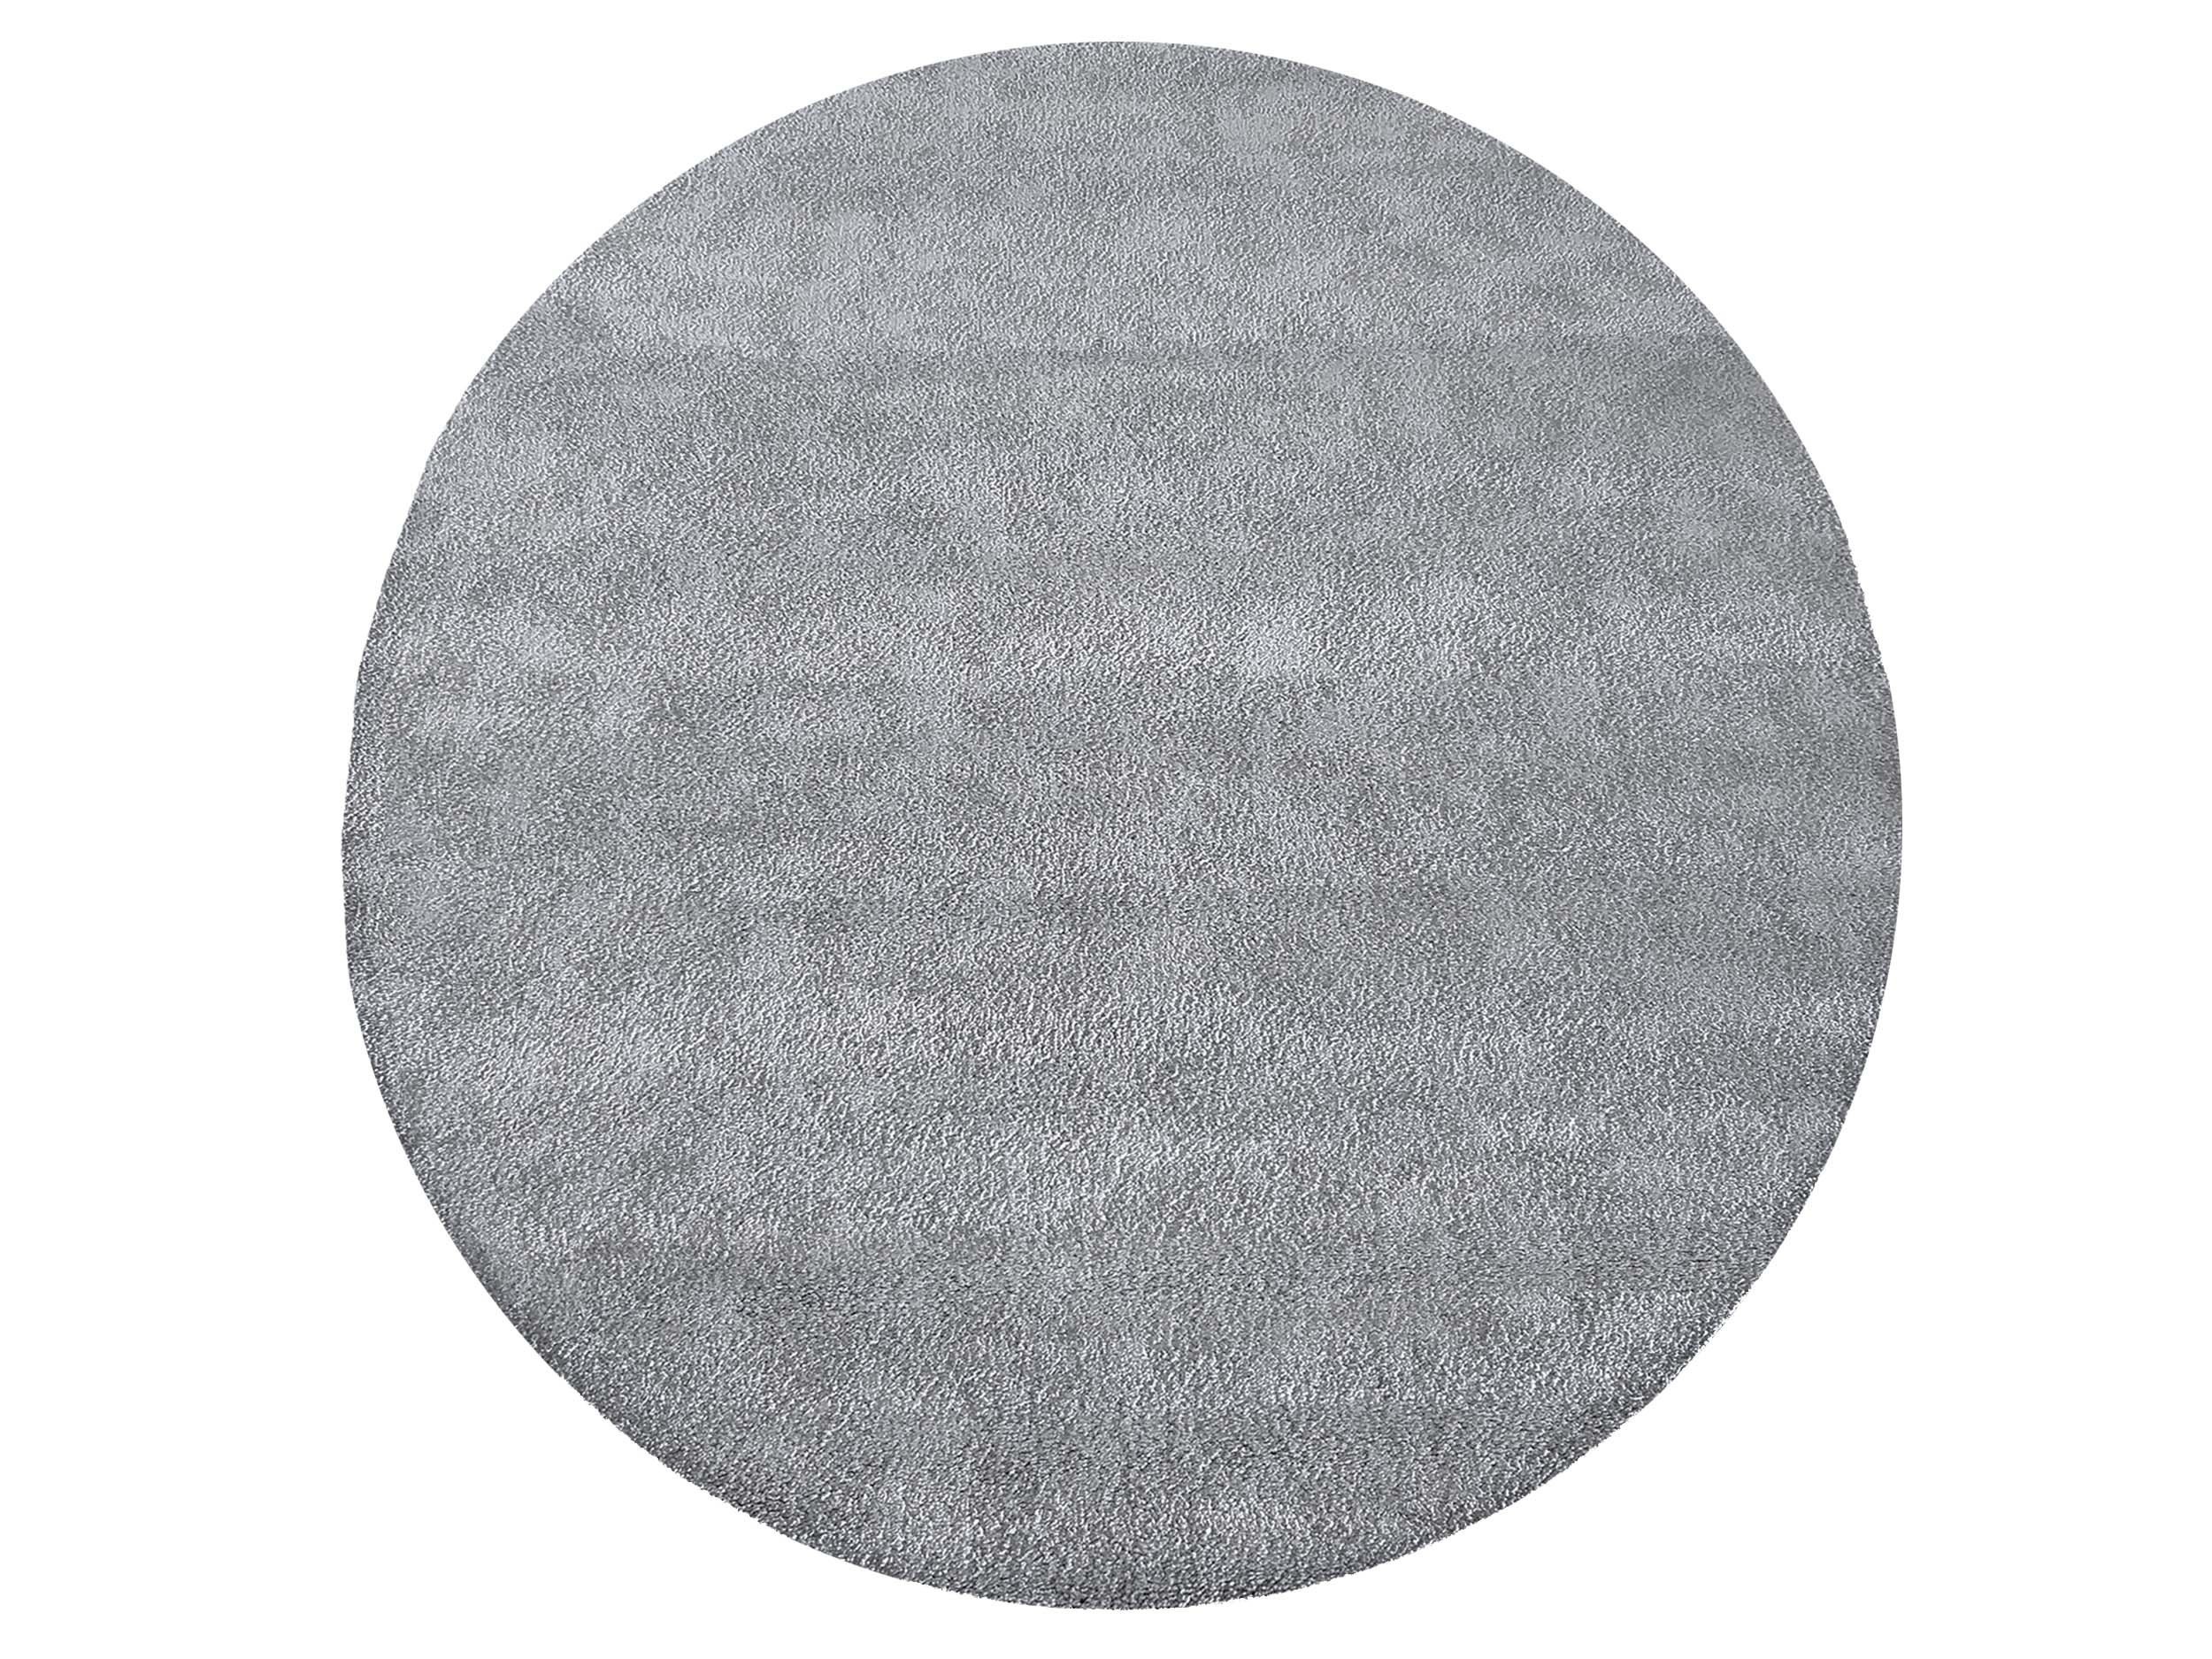 Moderní kulatý koberec v sivej barvě